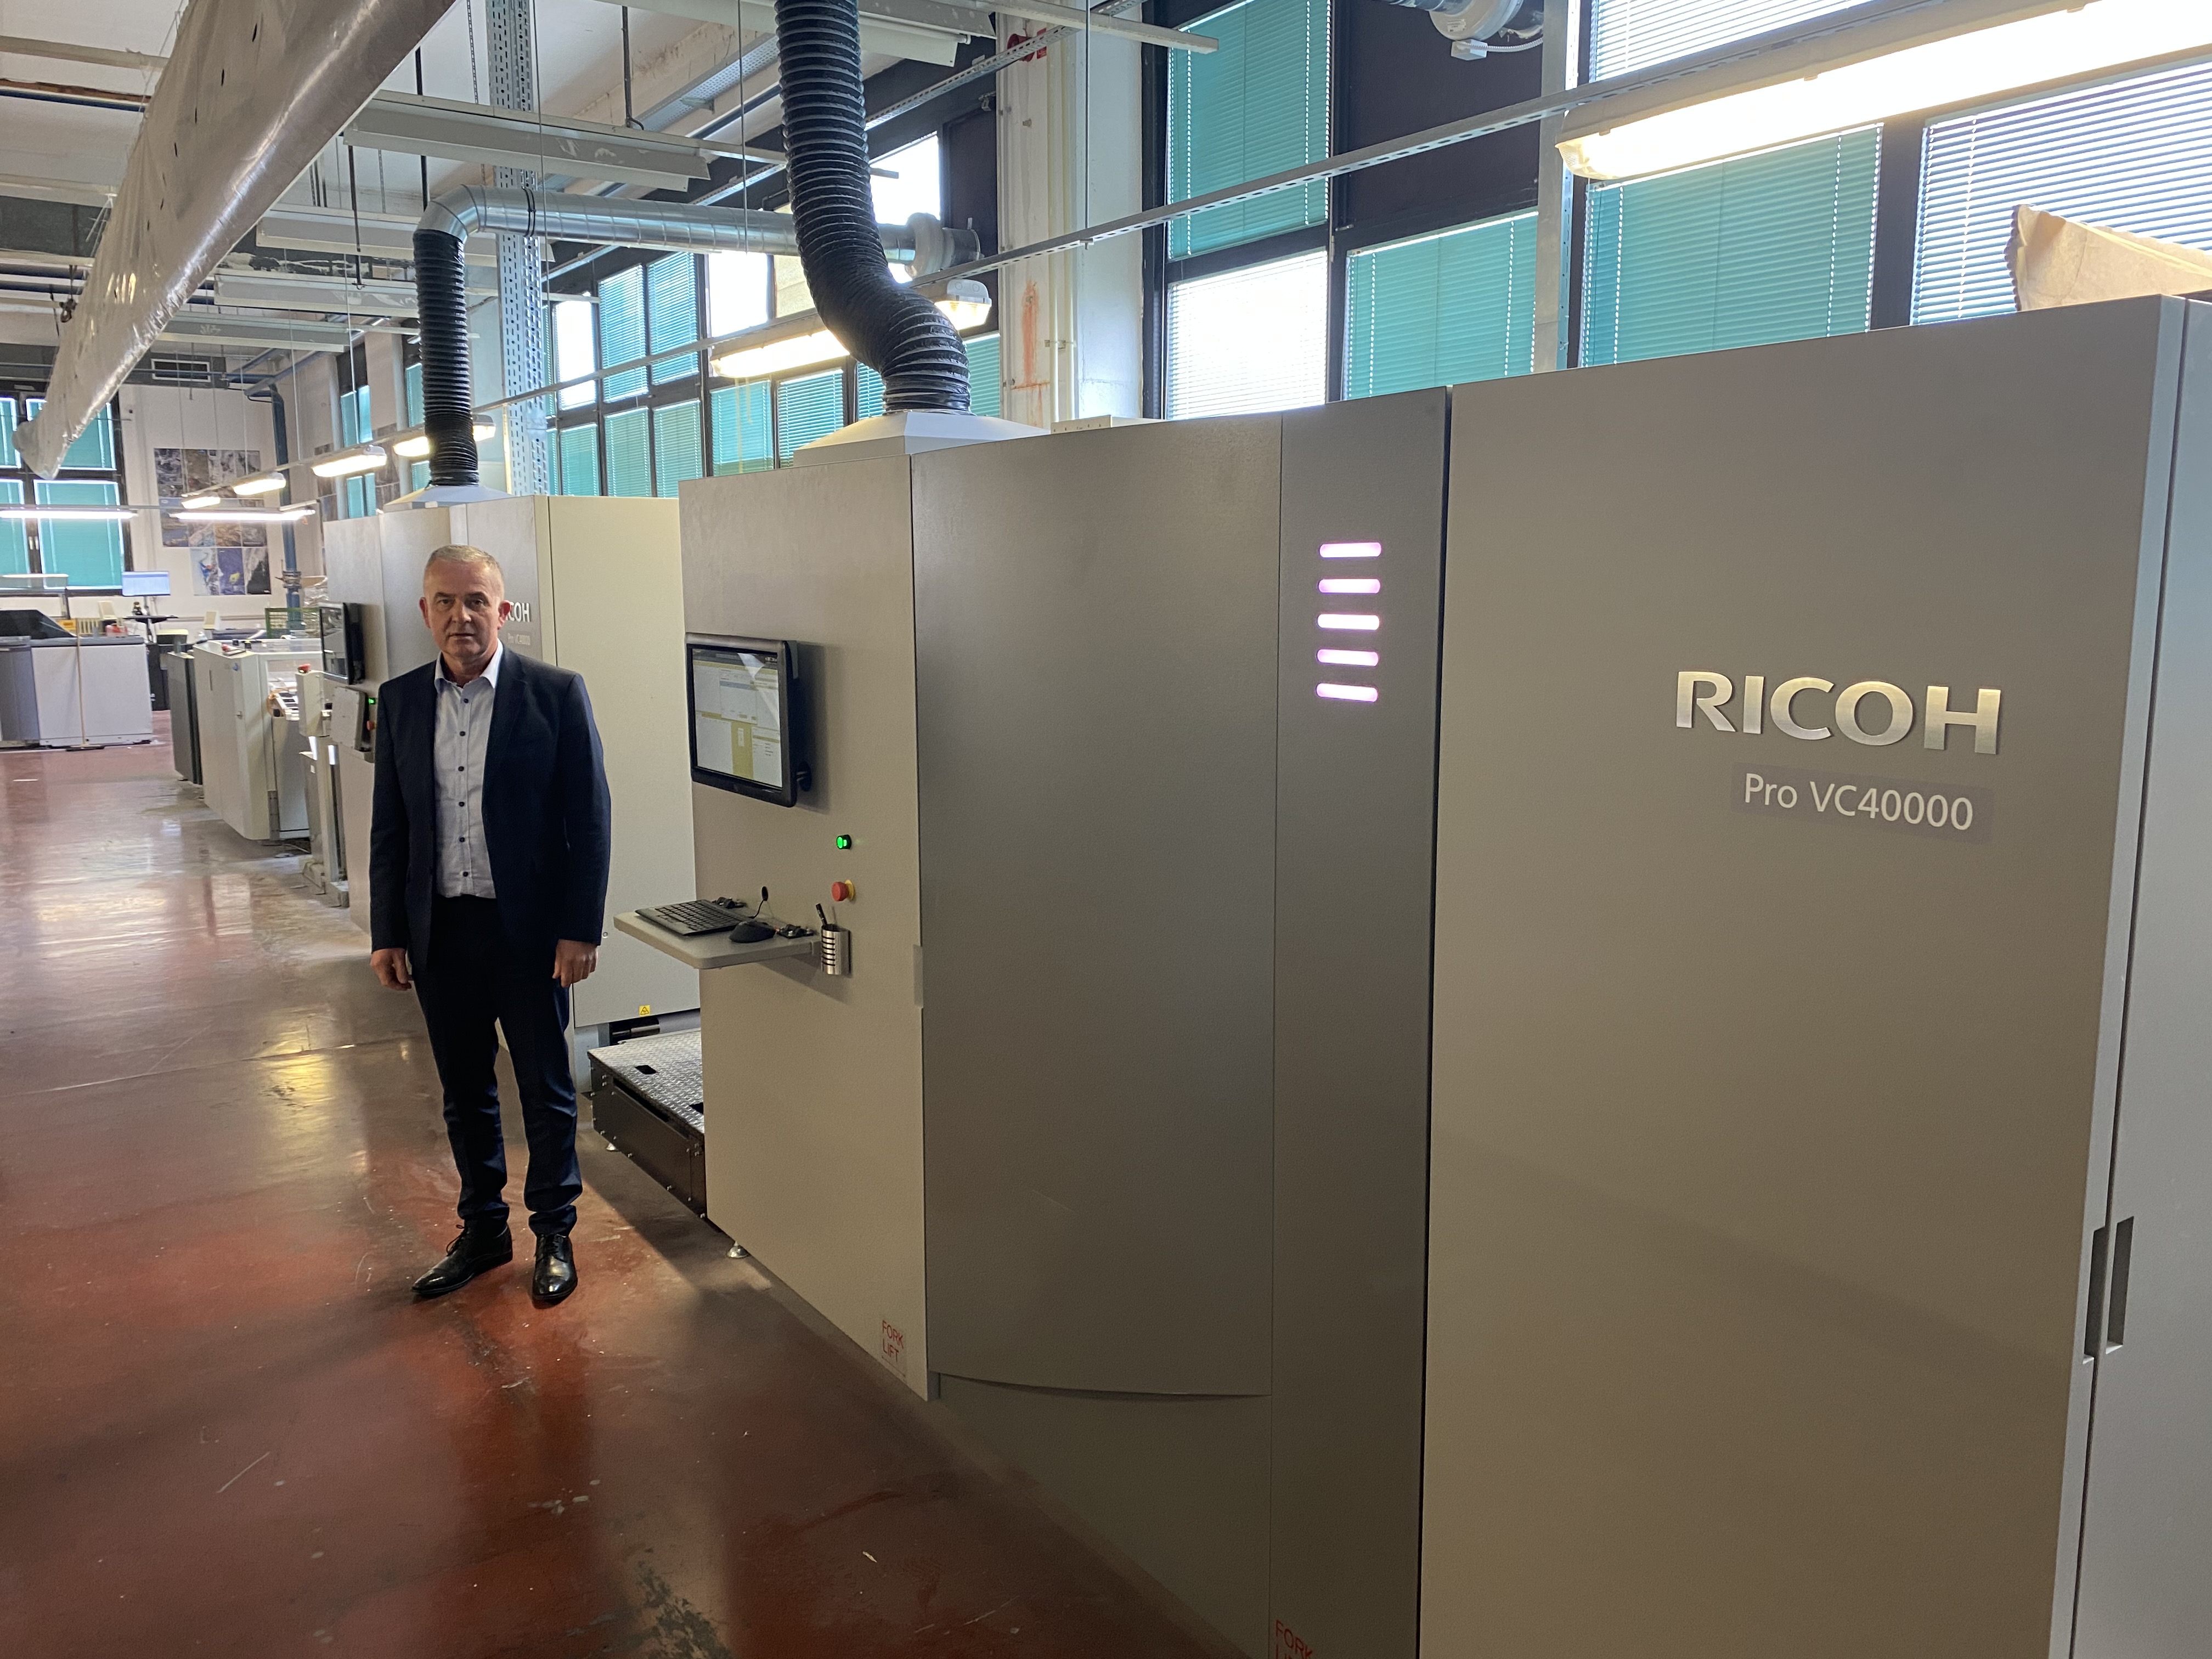 Generálny riaditeľ Slovinskej pošty Vili Hribernik sa zameriava na nové oblasti s druhým zariadením Ricoh Pro VC40000.